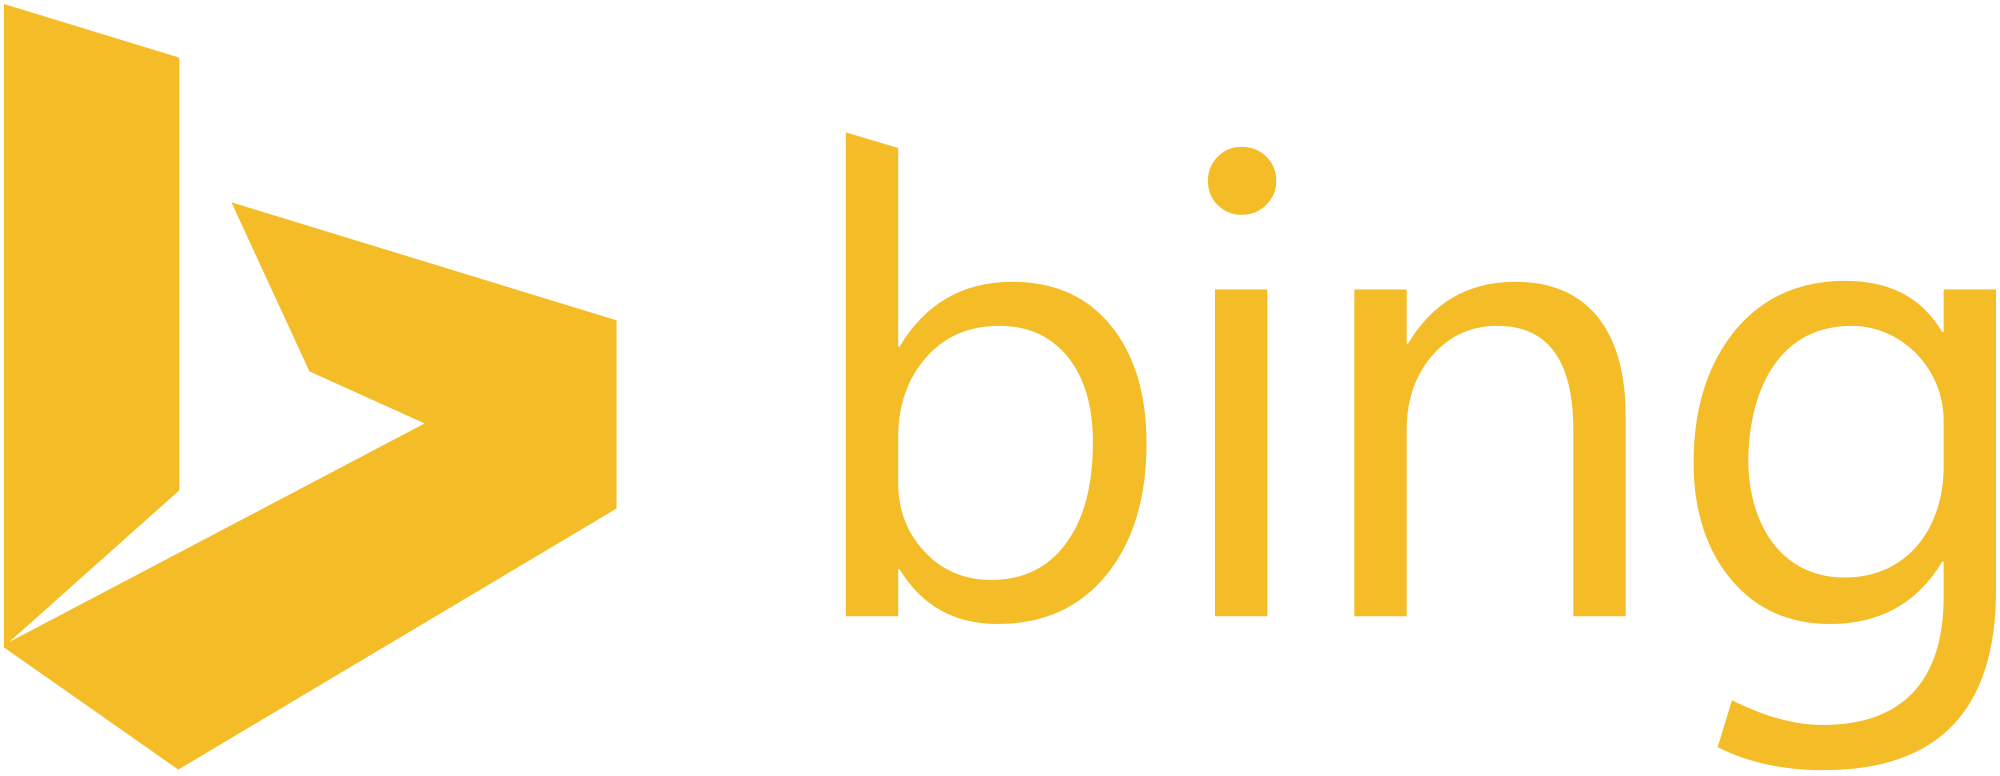 Bing Logo PNG - 115778